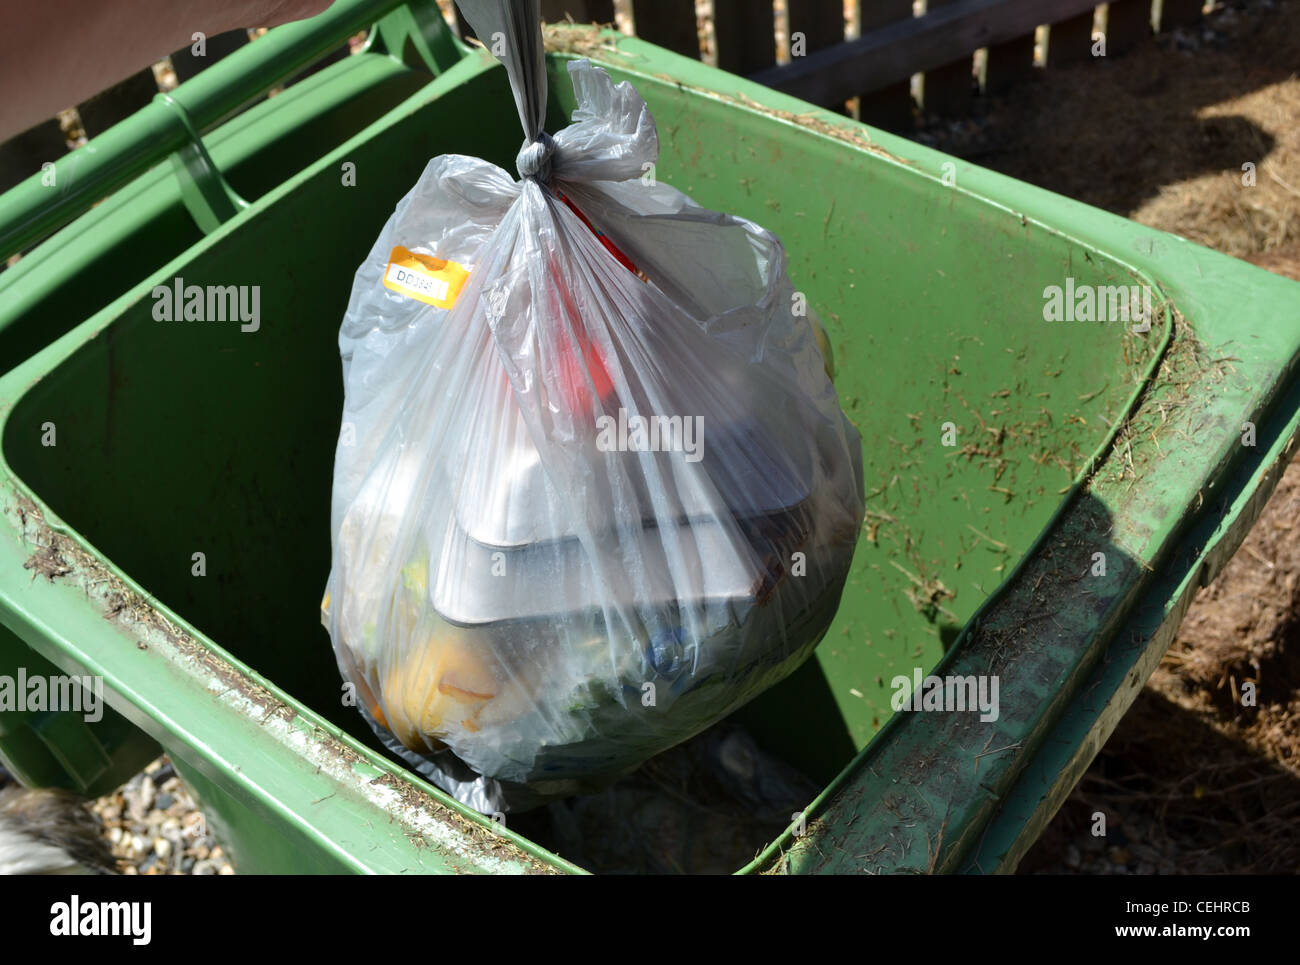 putting rubbish in the bin Stock Photo